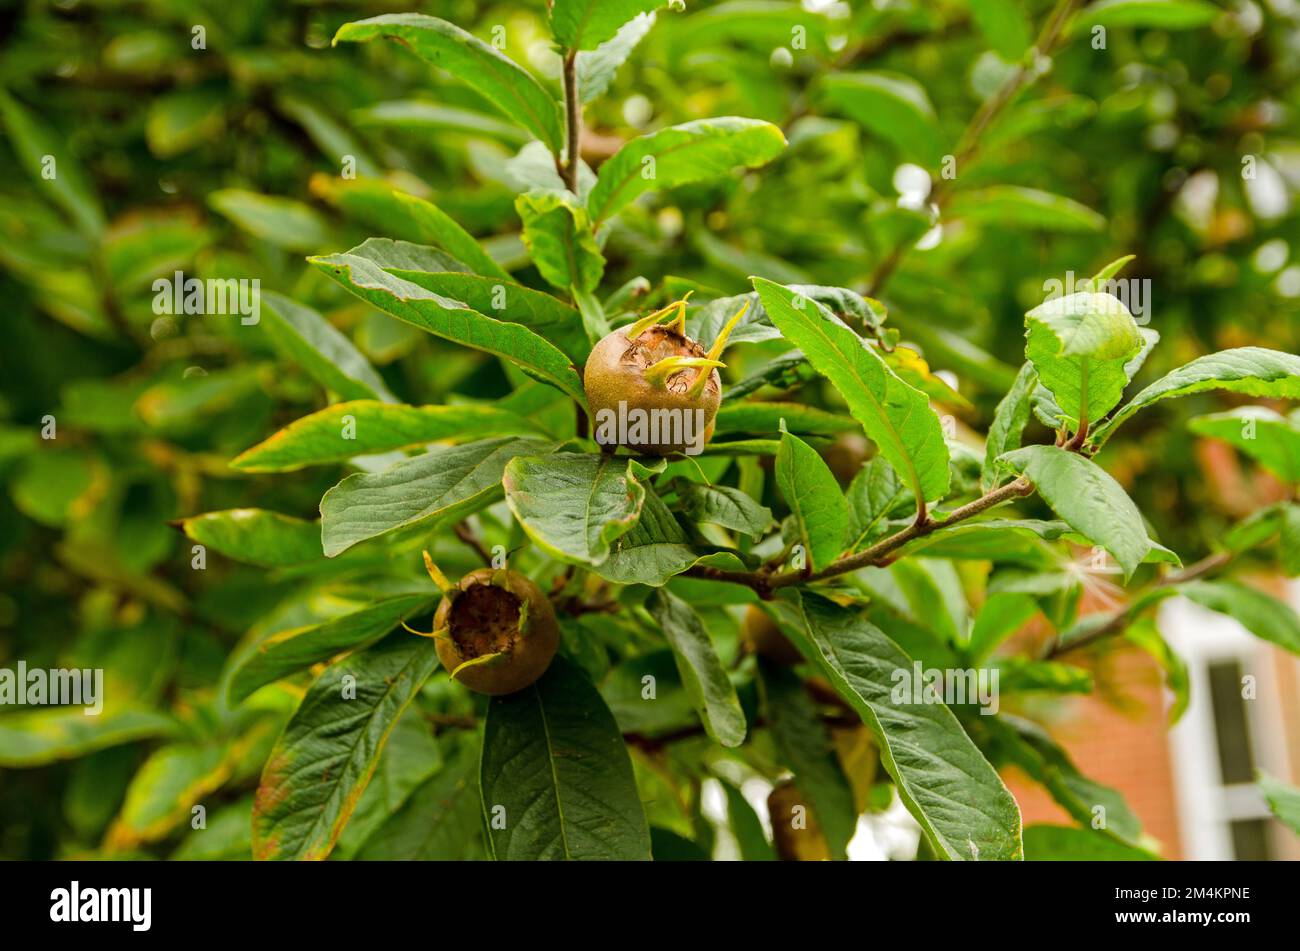 Frutto dell'albero di Medler, nome latino Mespilus germanica, maturazione in giardino a fine estate. Foto Stock